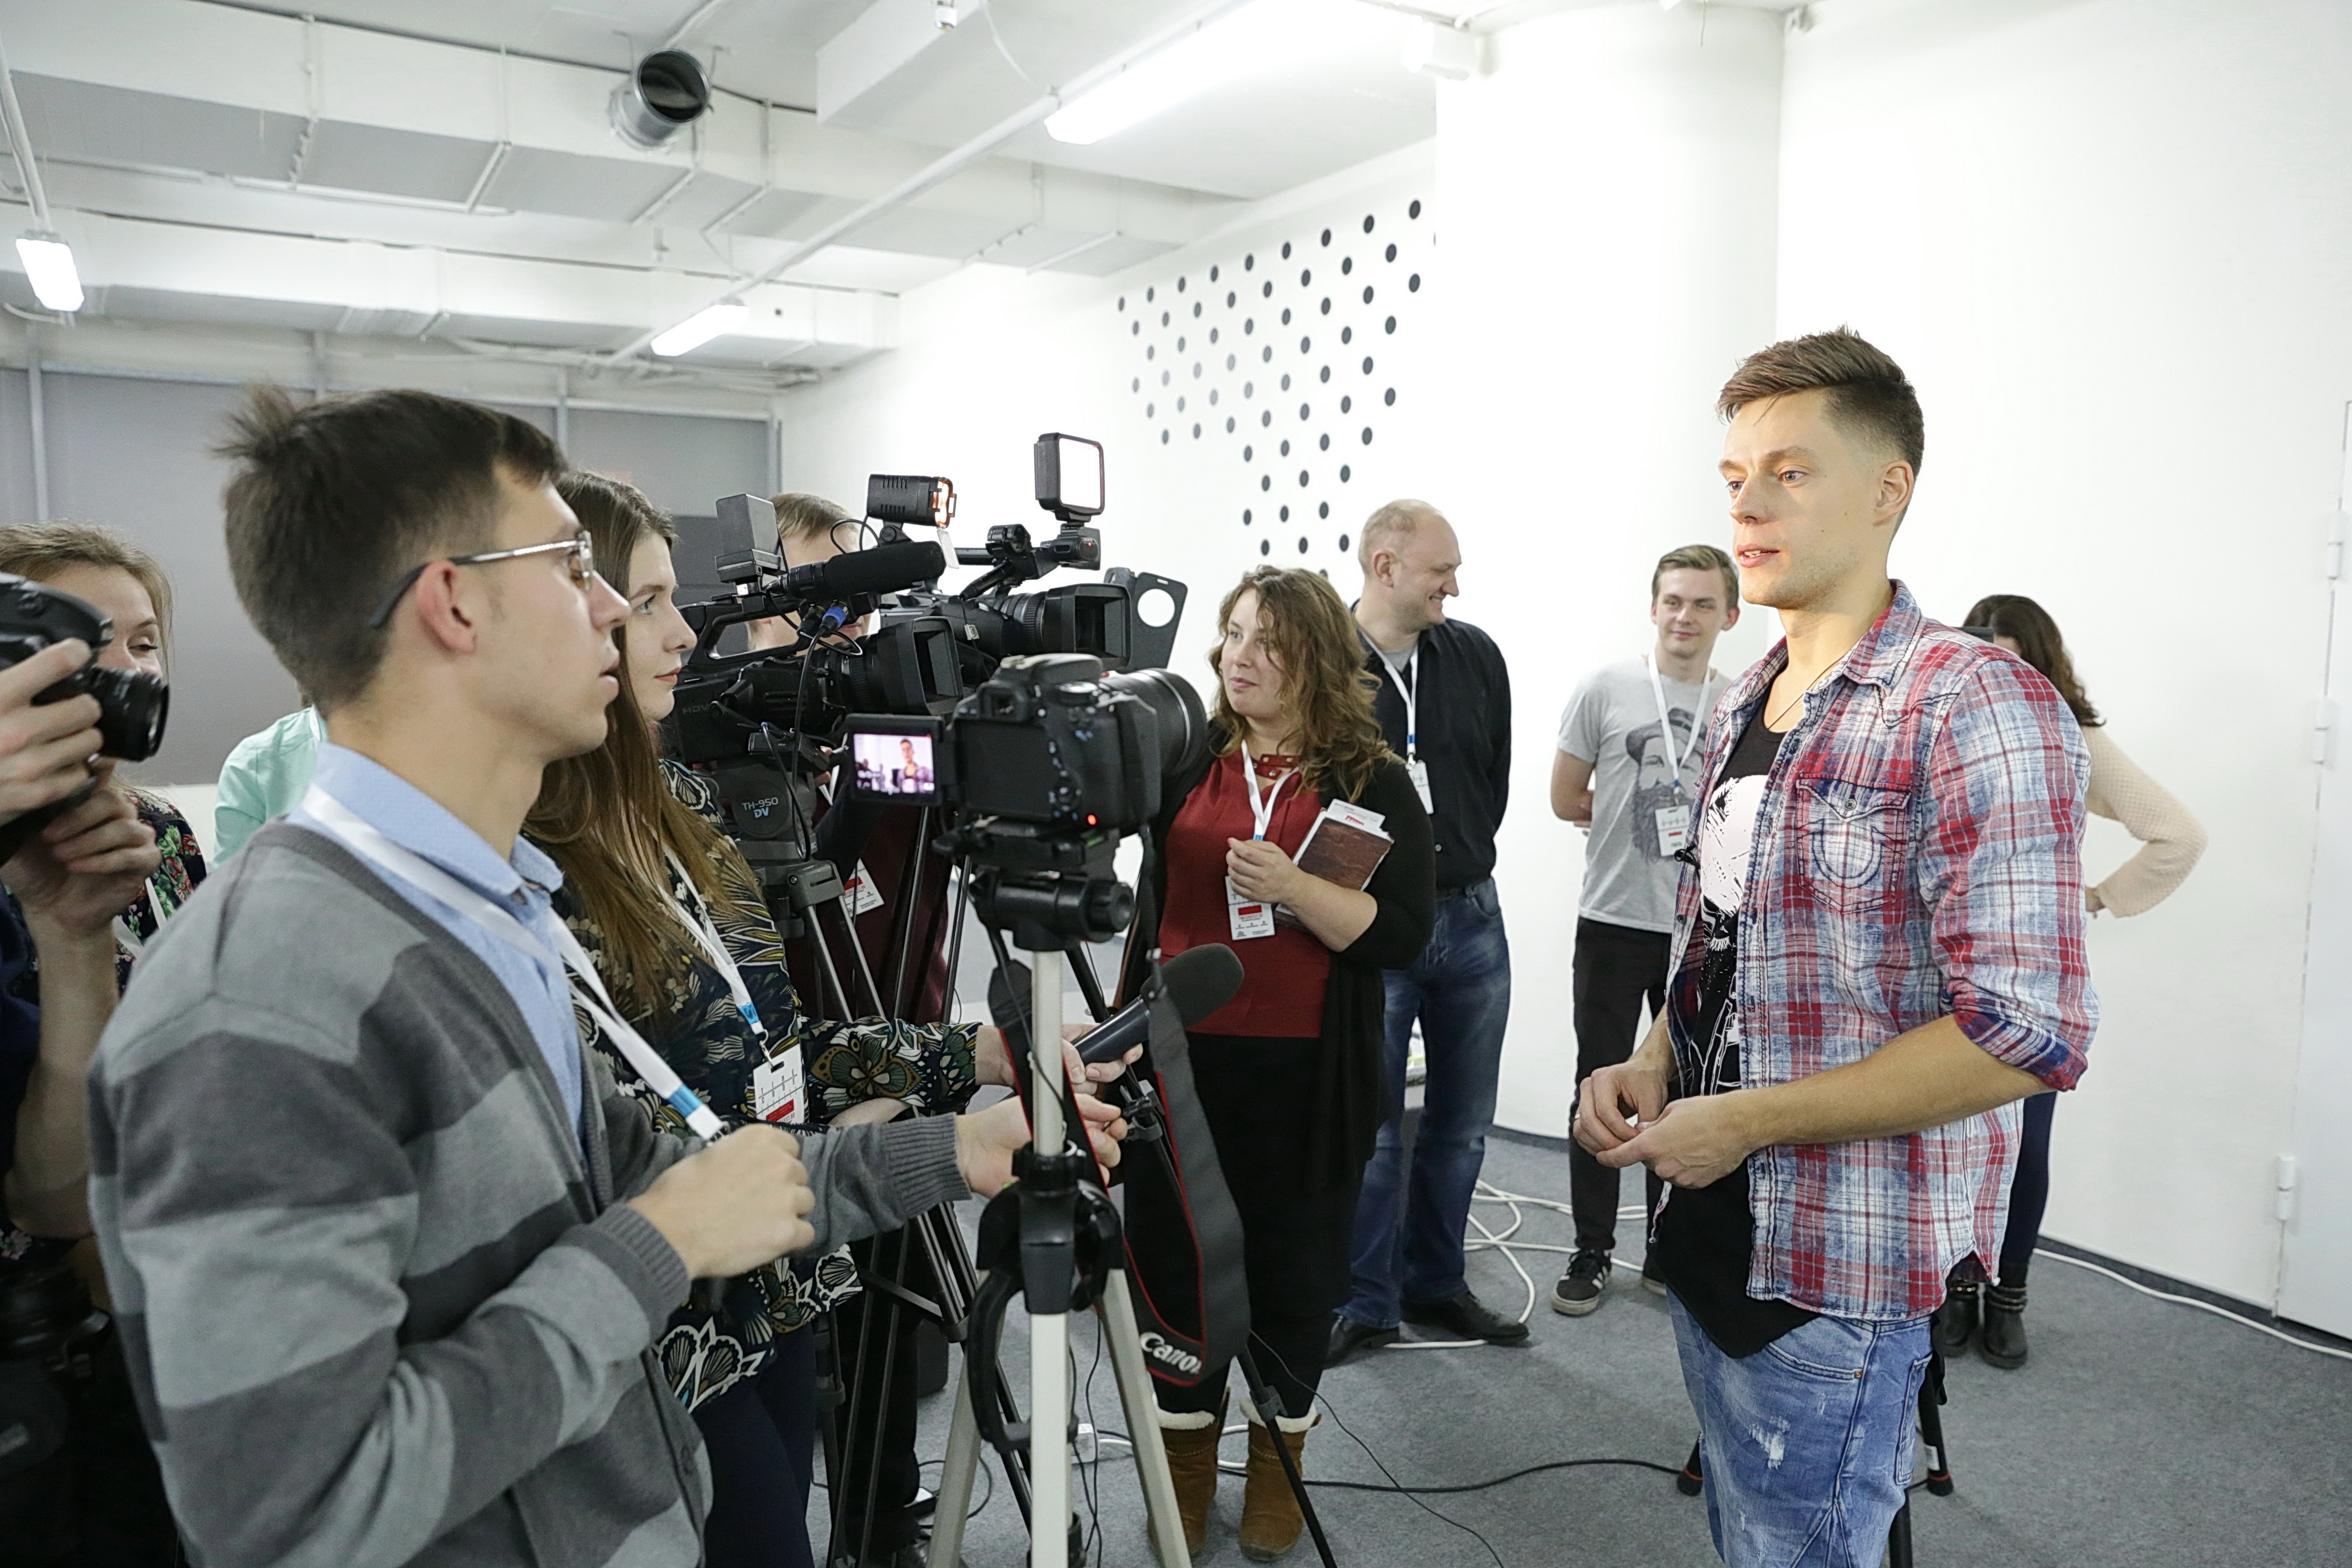 В Екатеринбурге пройдет финал Фестиваля молодёжной журналистики TIME CODE